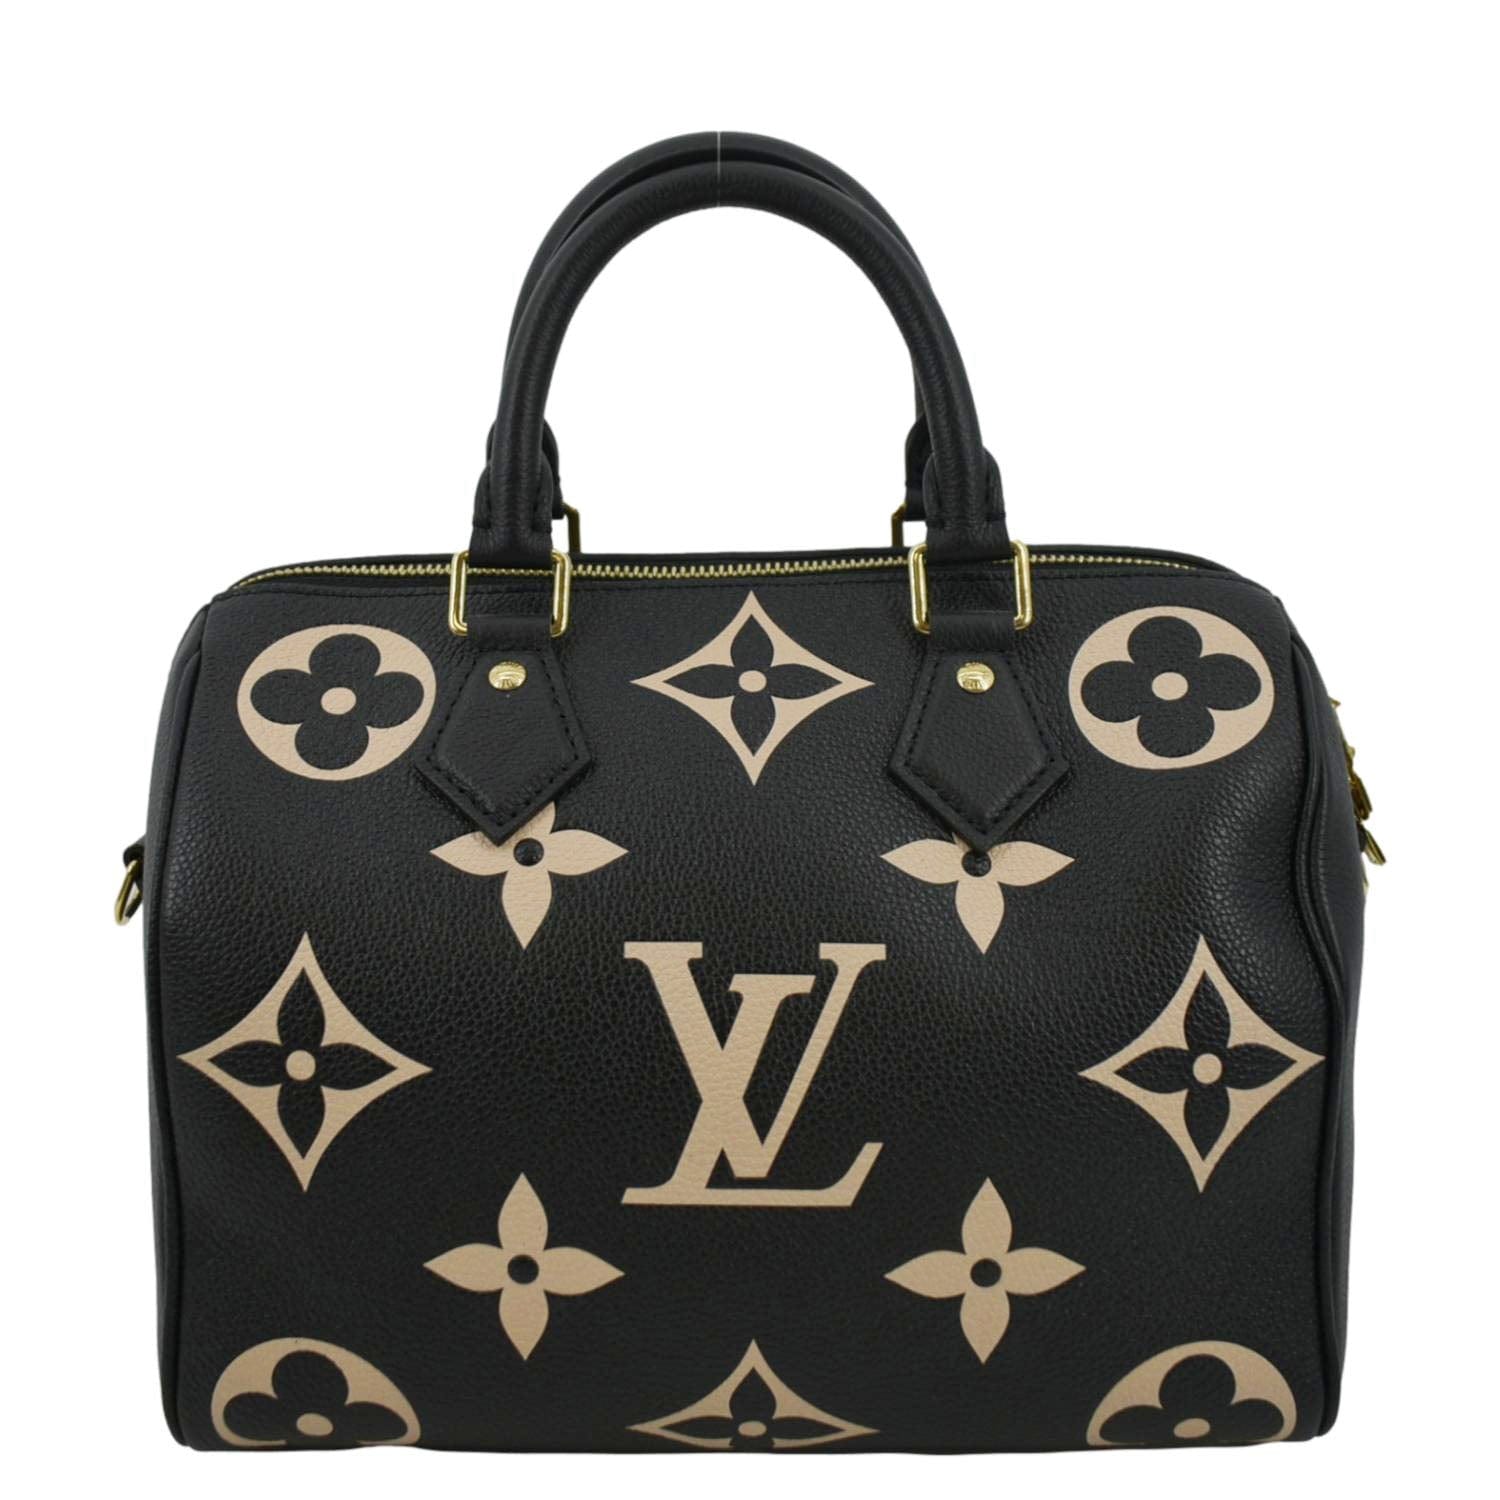 Louis Vuitton Speedy Bandouliere Monogram Empreinte 25 Black in